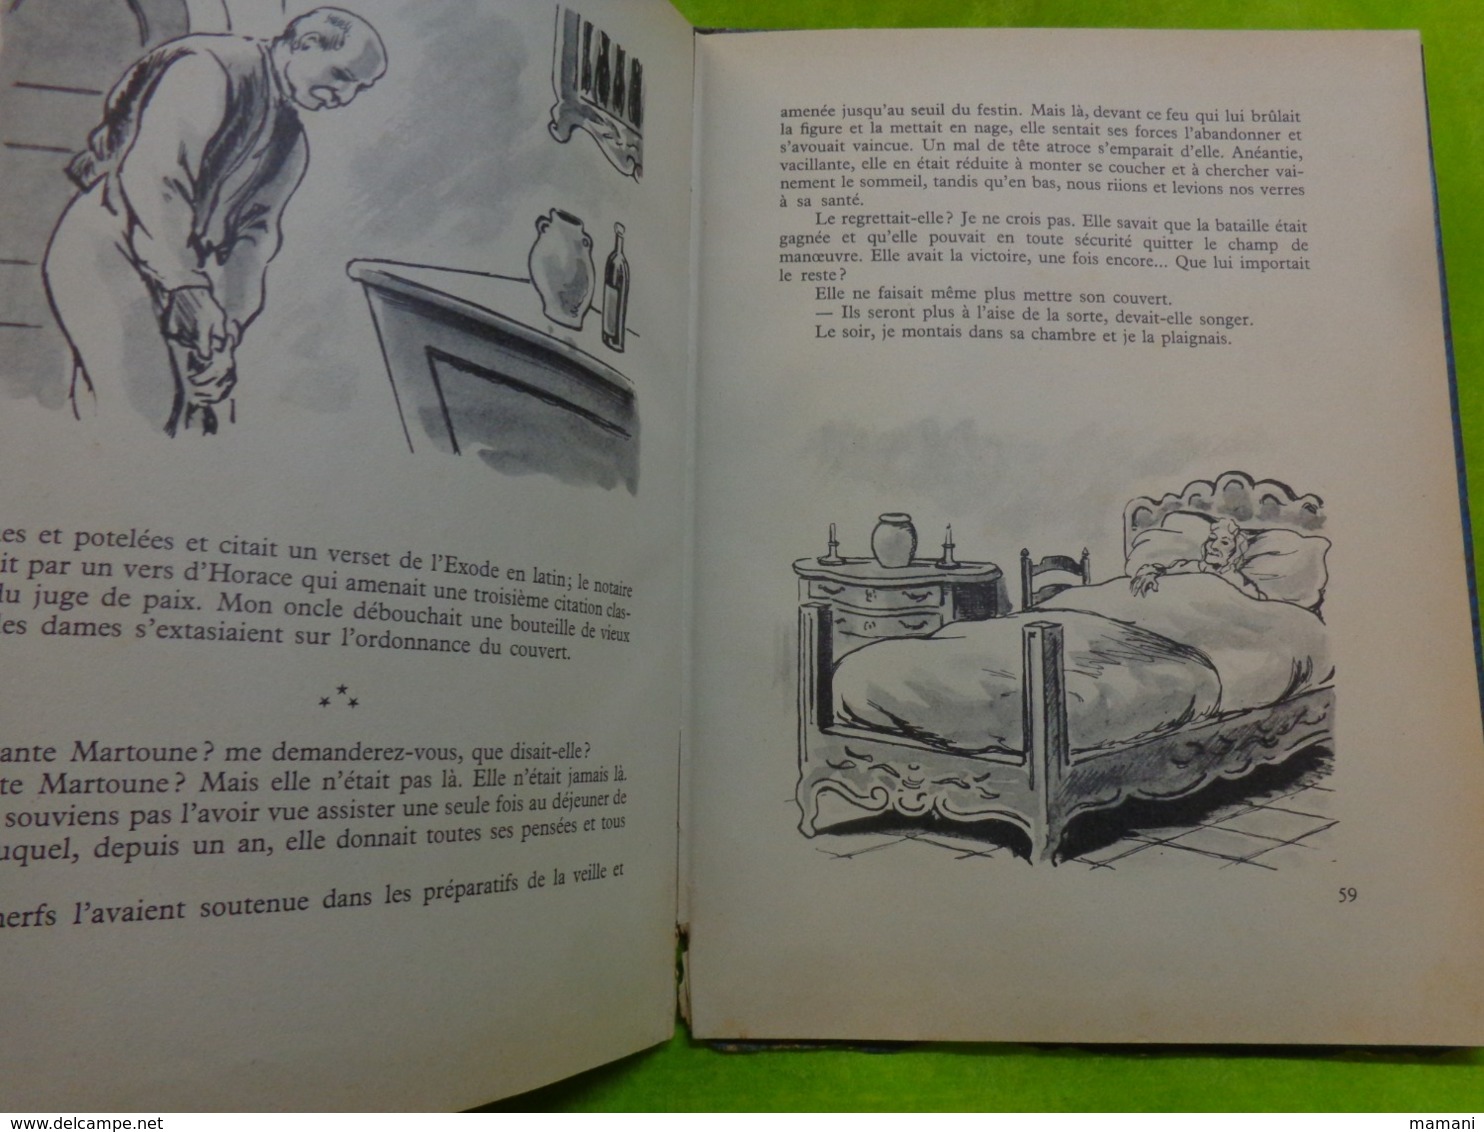 au pays de Magali -charles de richter contes -illustr. pierre rousseau-1953- bibliotheque rouge et bleue